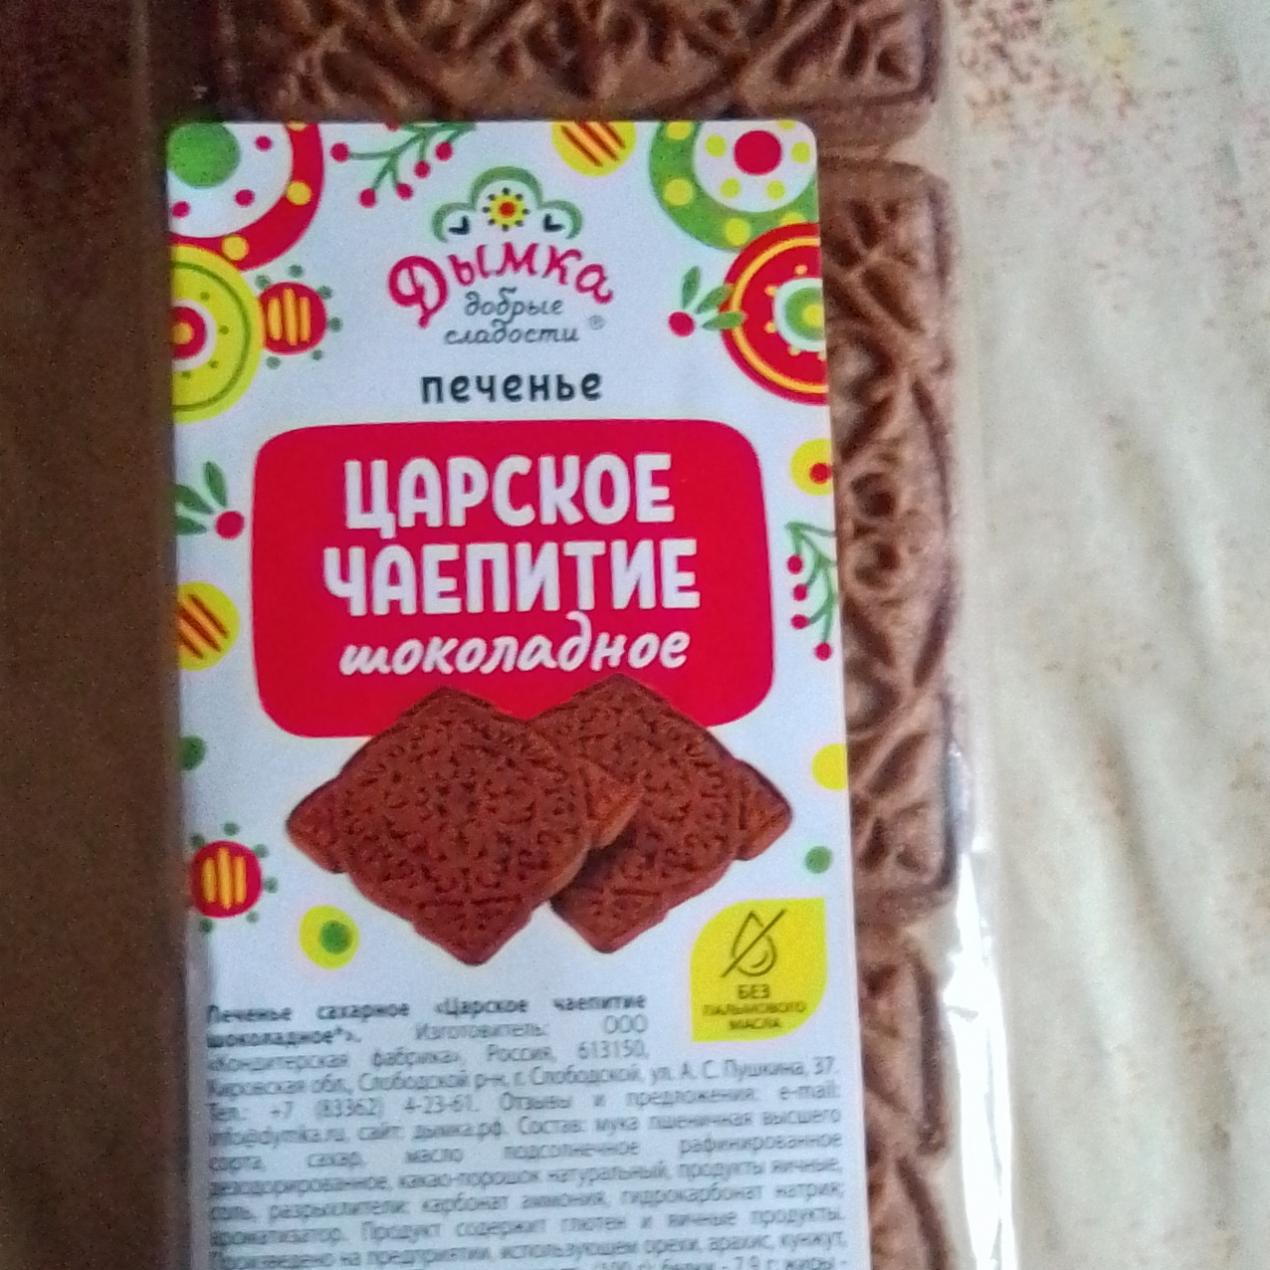 Фото - Печенье царское чаепитие шоколадное Дымка